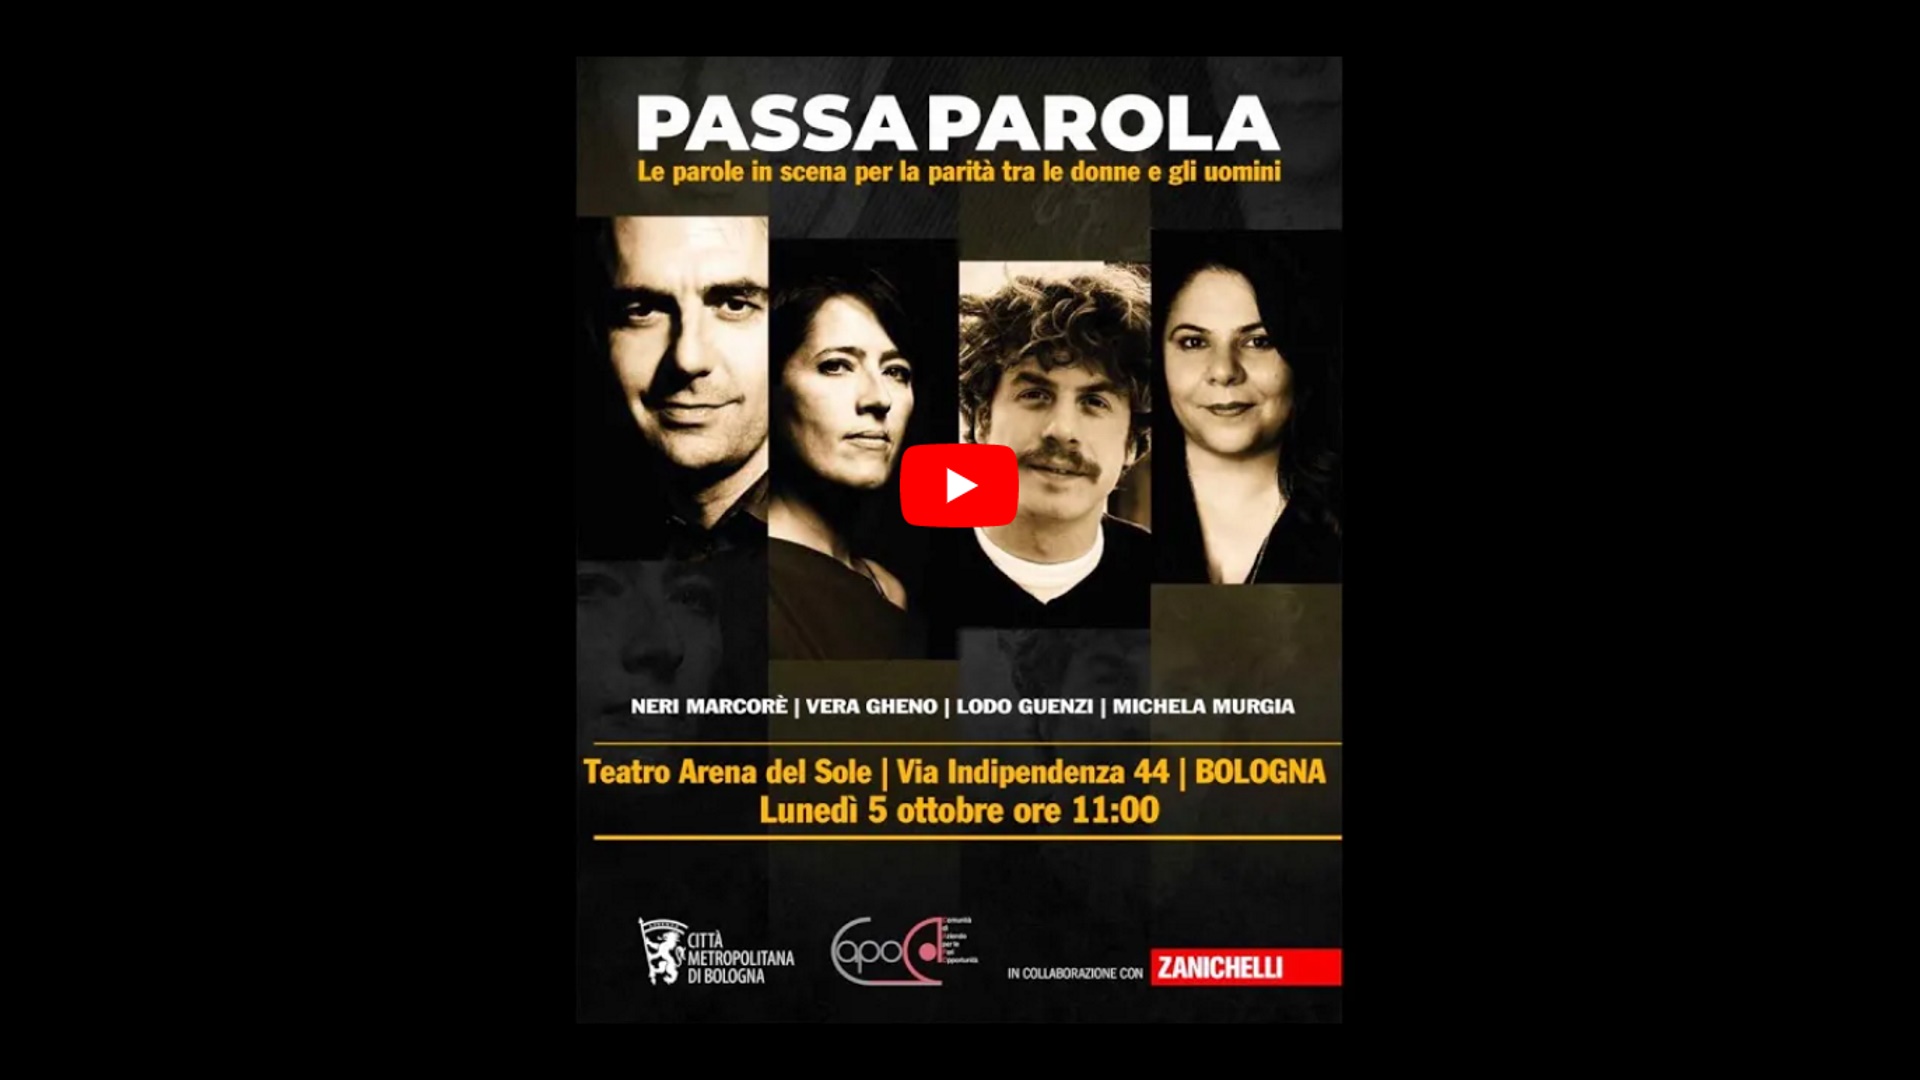 "Passaparola" le parole in scena per la parità tra donne e uomini